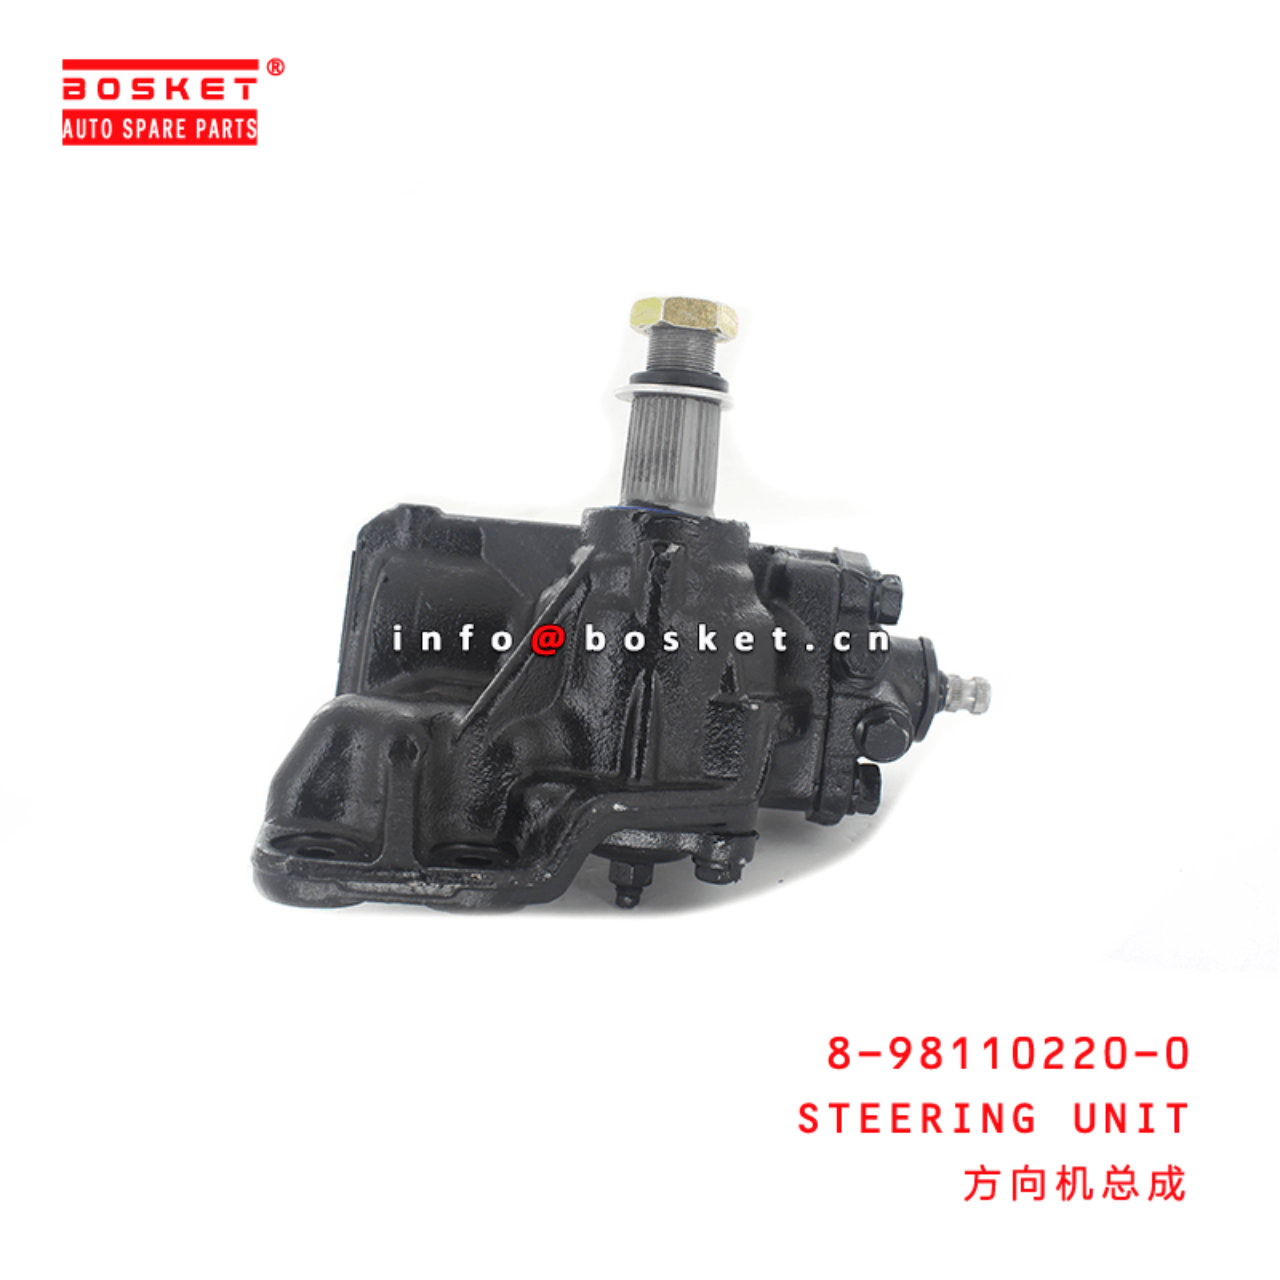  8-98110220-0 Steering Unit 8981102200 Suitable for ISUZU 700P